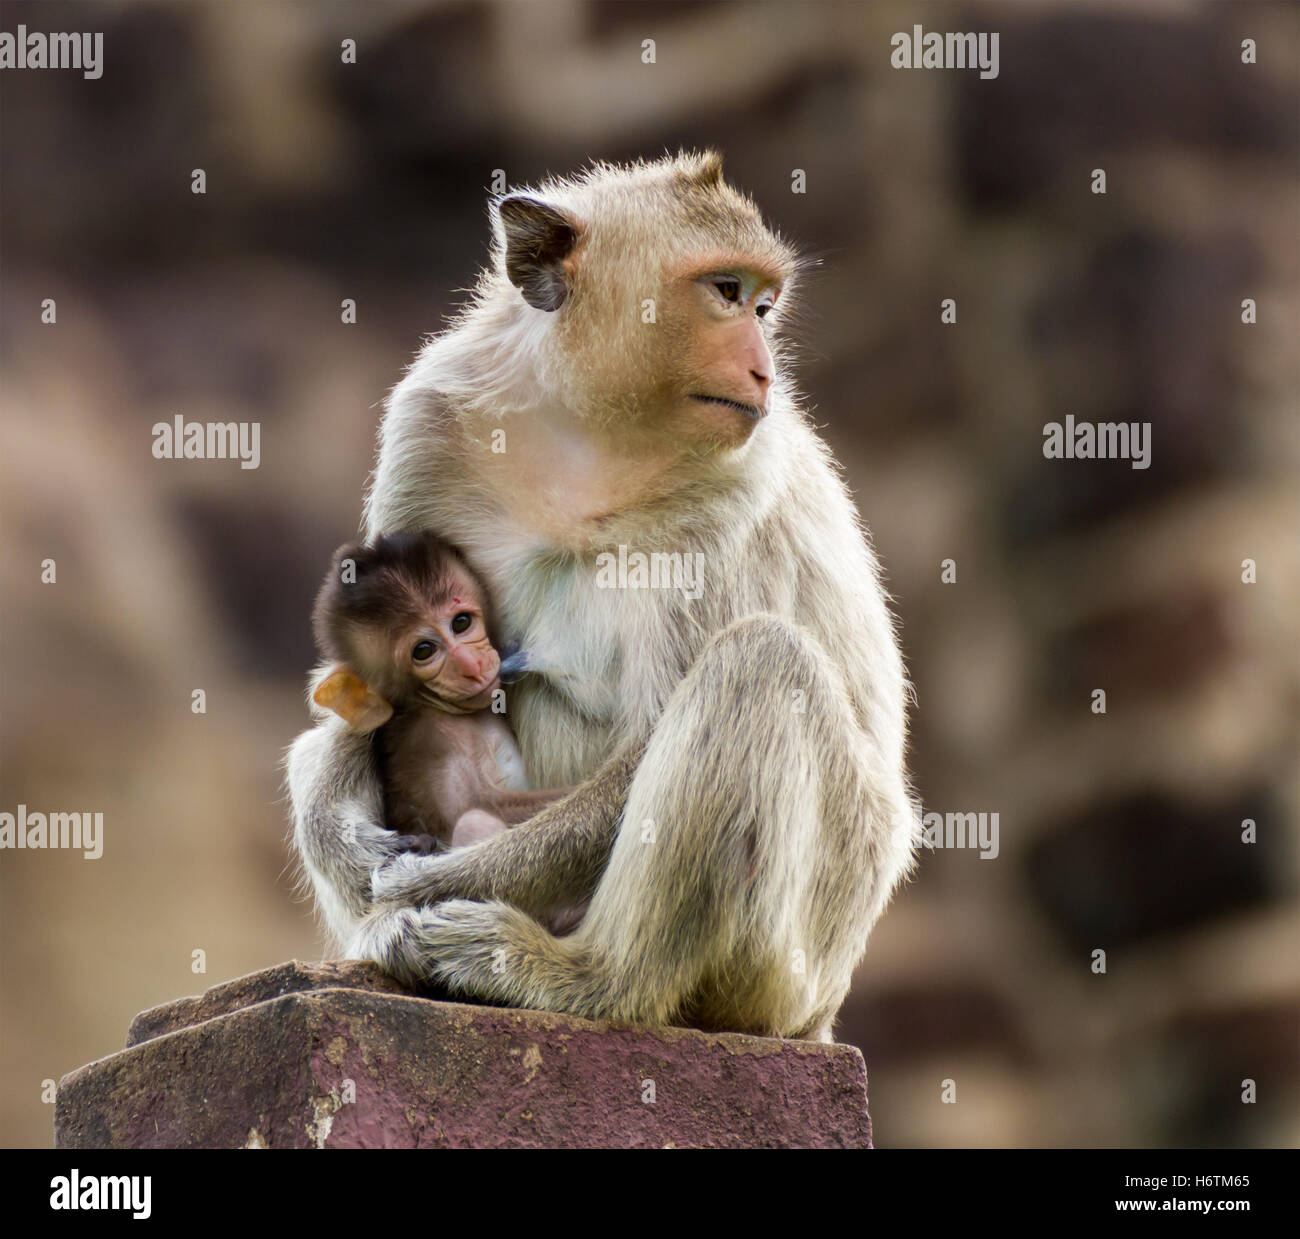 Freundschaft weiblichen Tier Säugetier wilde Afrika Affe Pelz Look mit einem Blick sehen Blick spähen Blick auf behaarte horizontale klein Stockfoto